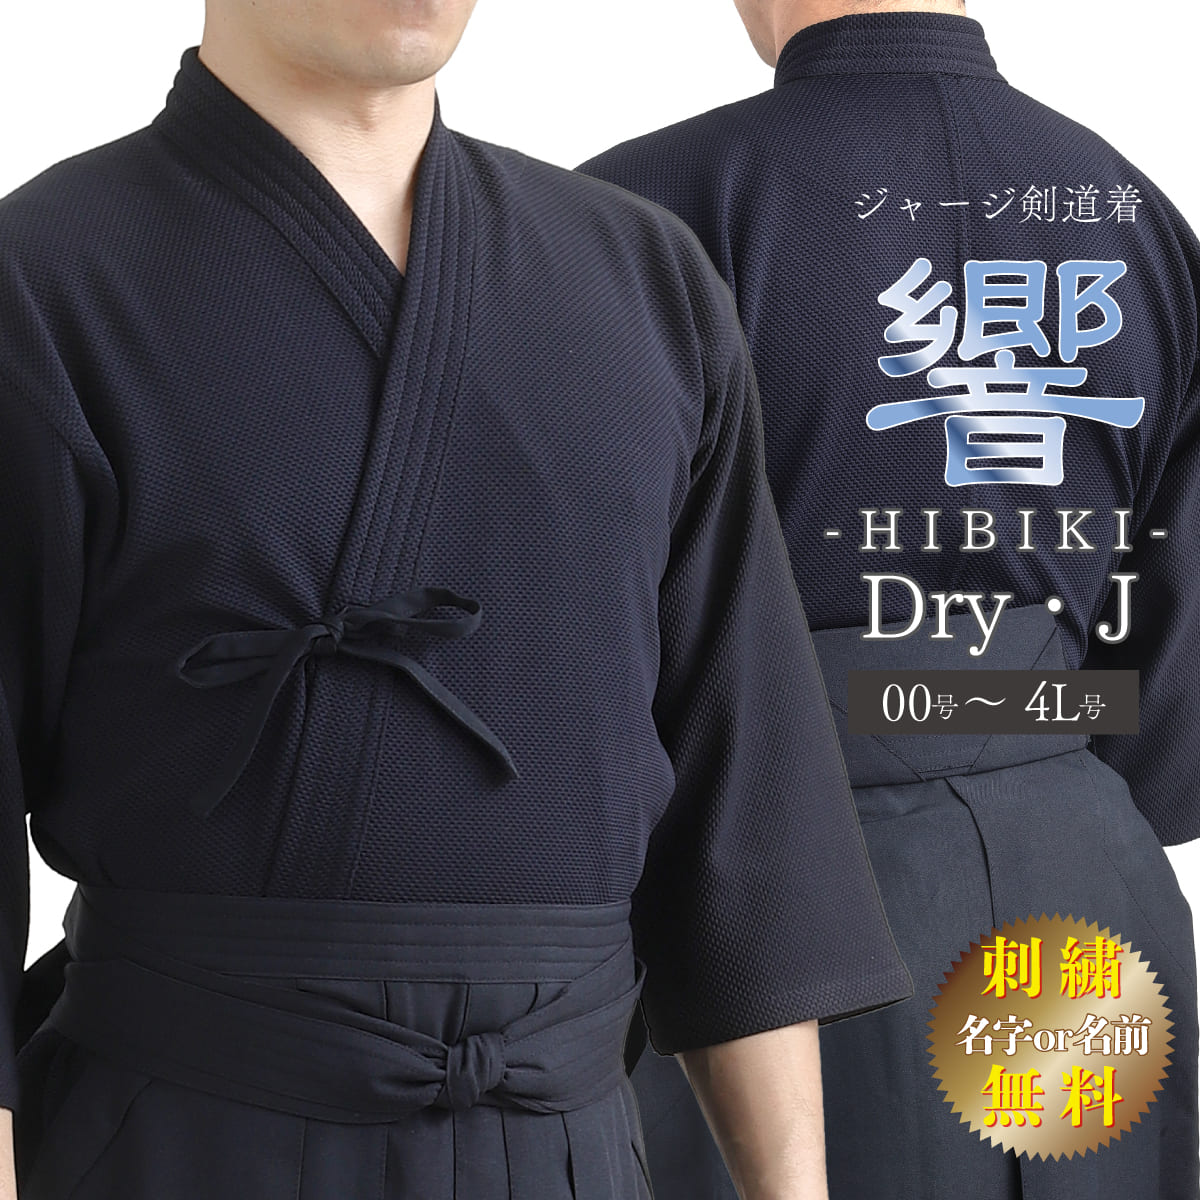 ドライ ジャージ剣道着 Dry・J 響- HIBIKI - 胴着 上着 – 西日本武道具